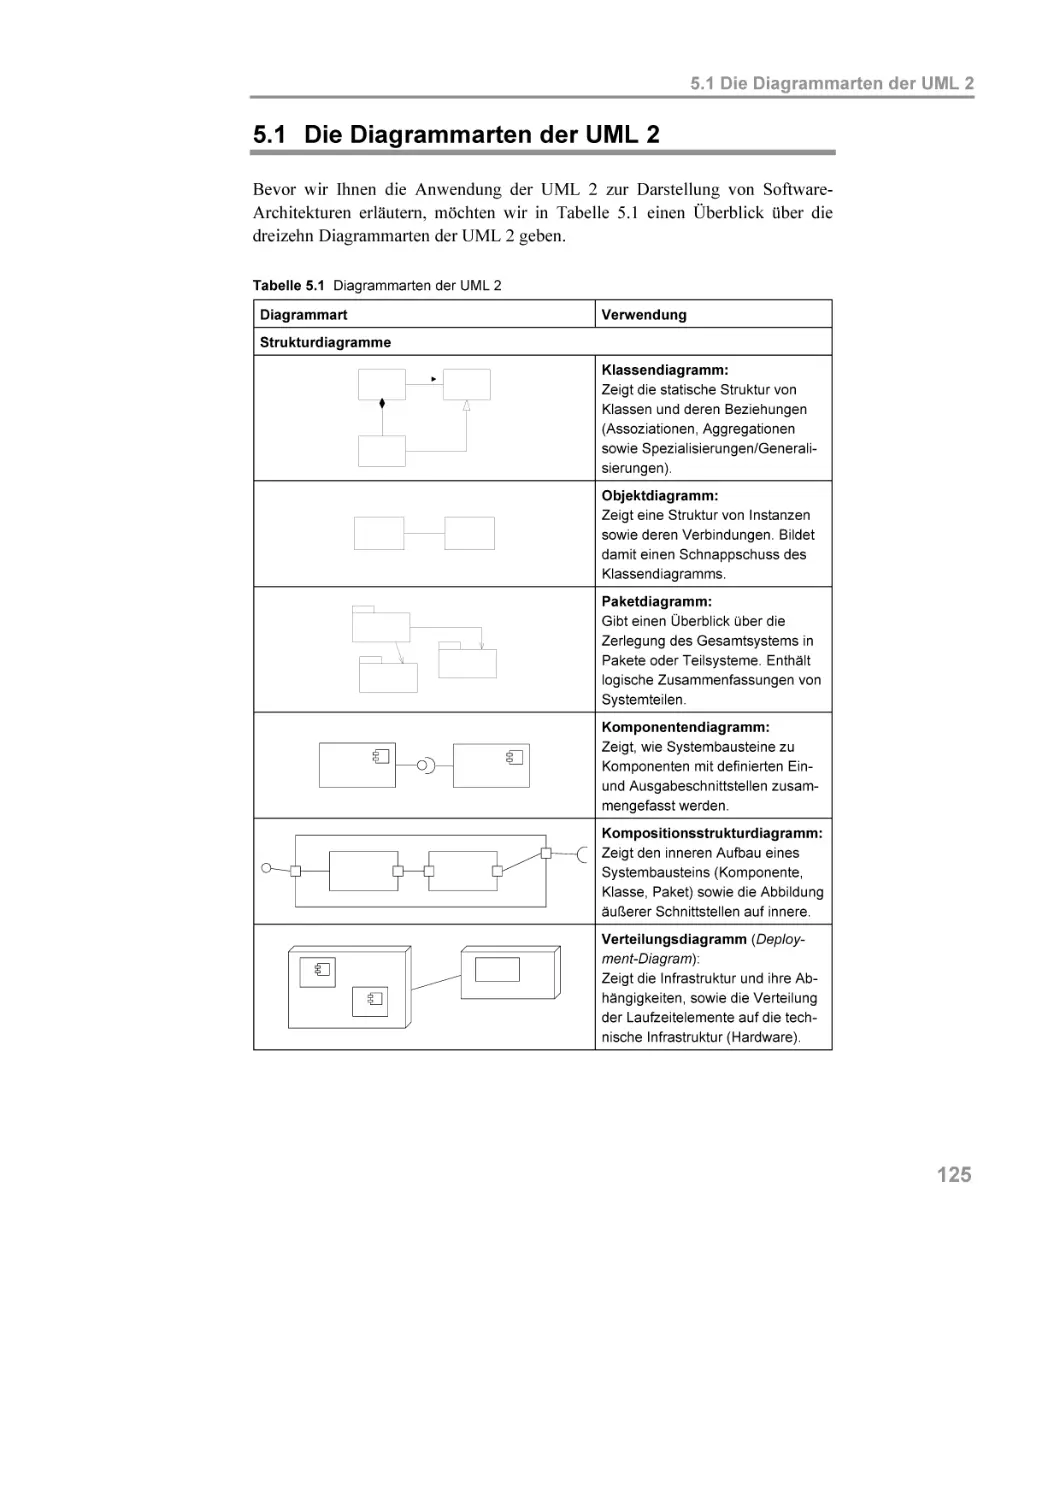 5.1 Die Diagrammarten der UML 2